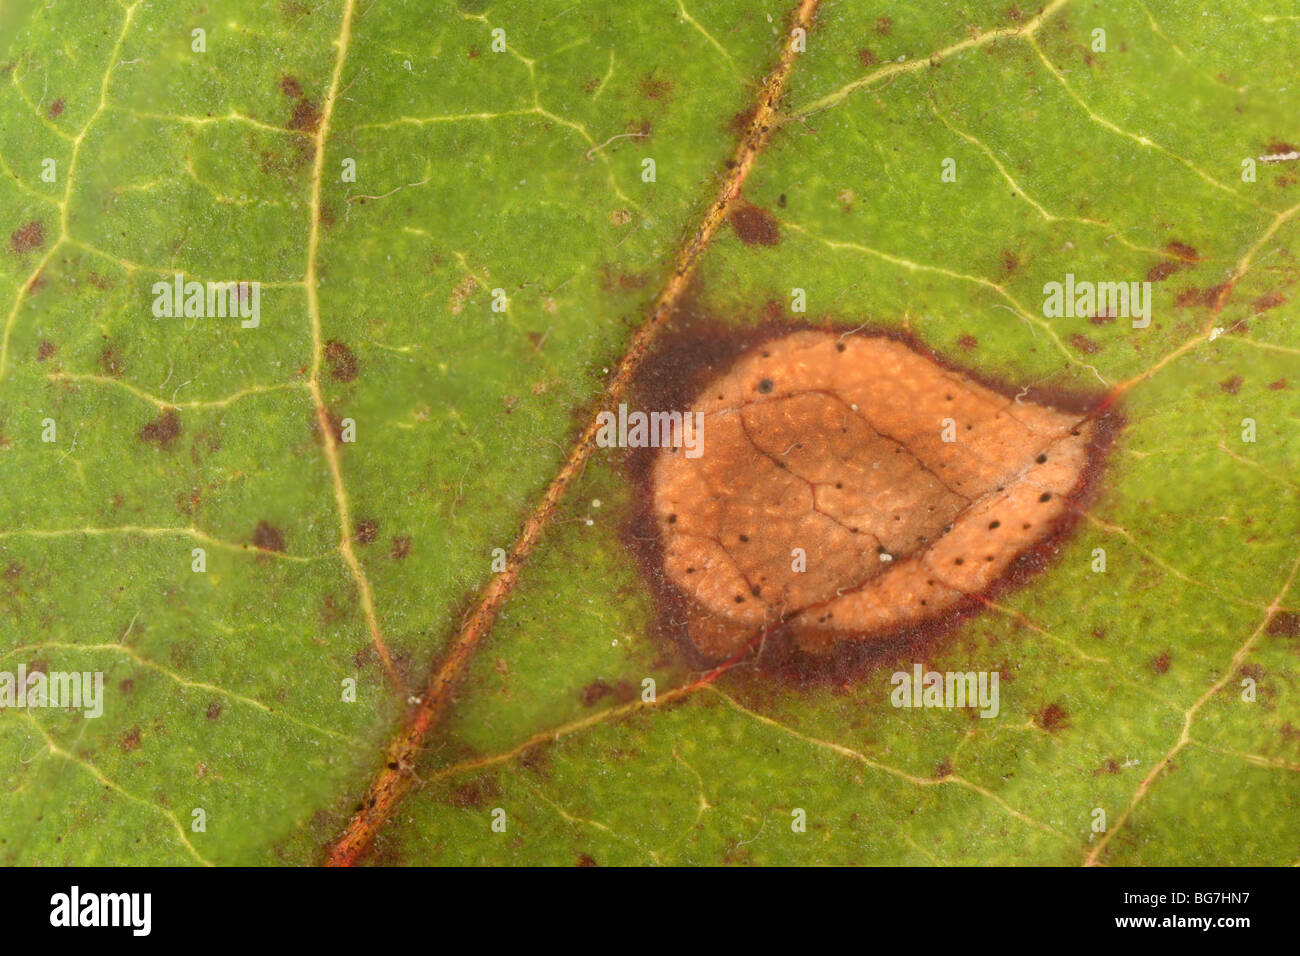 frog-eye leaf spot on a crabapple leaf Stock Photo